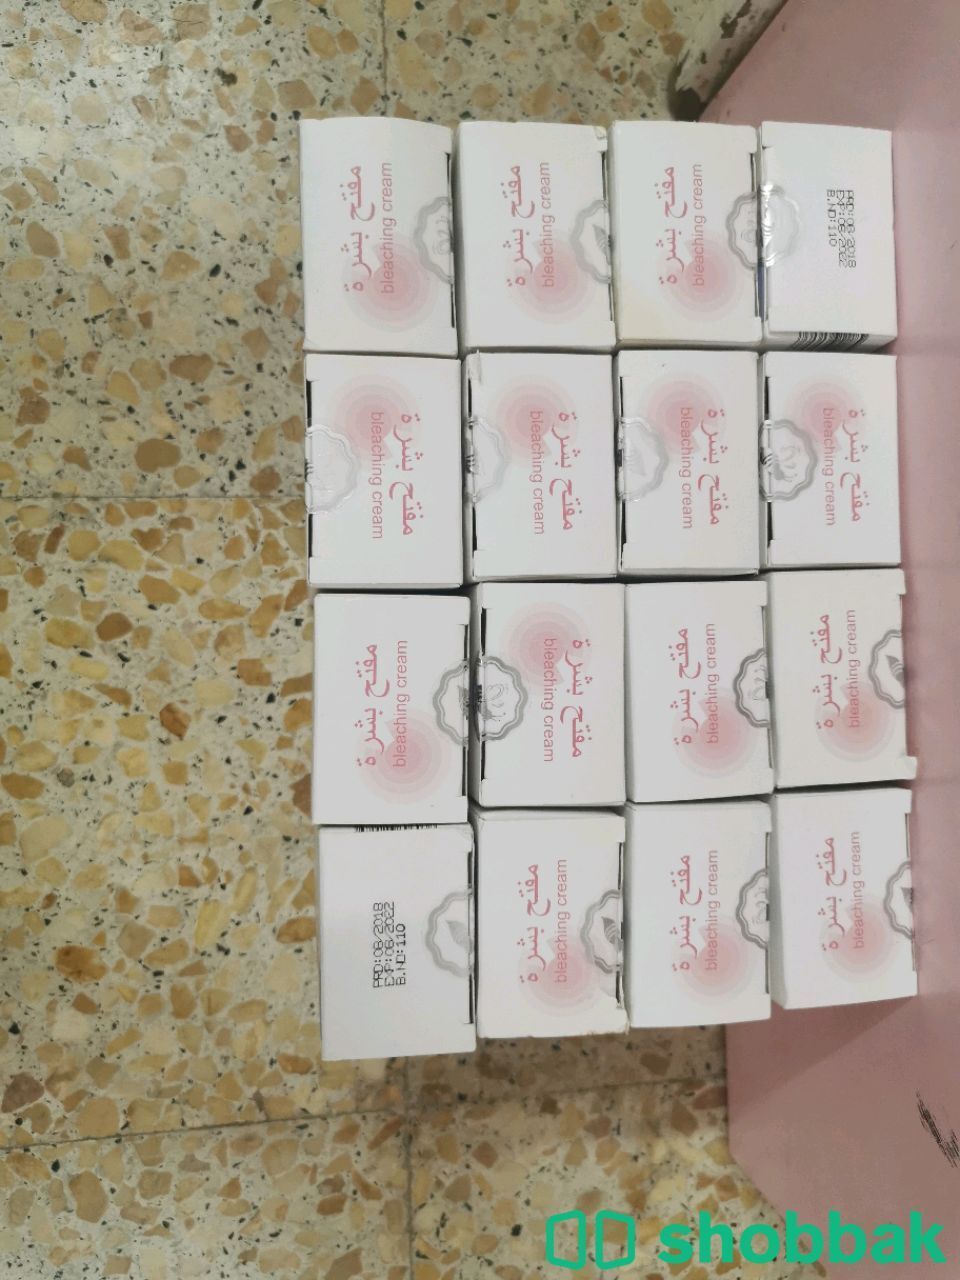 منتجات العناية للبشرة ماركة تركية  Shobbak Saudi Arabia